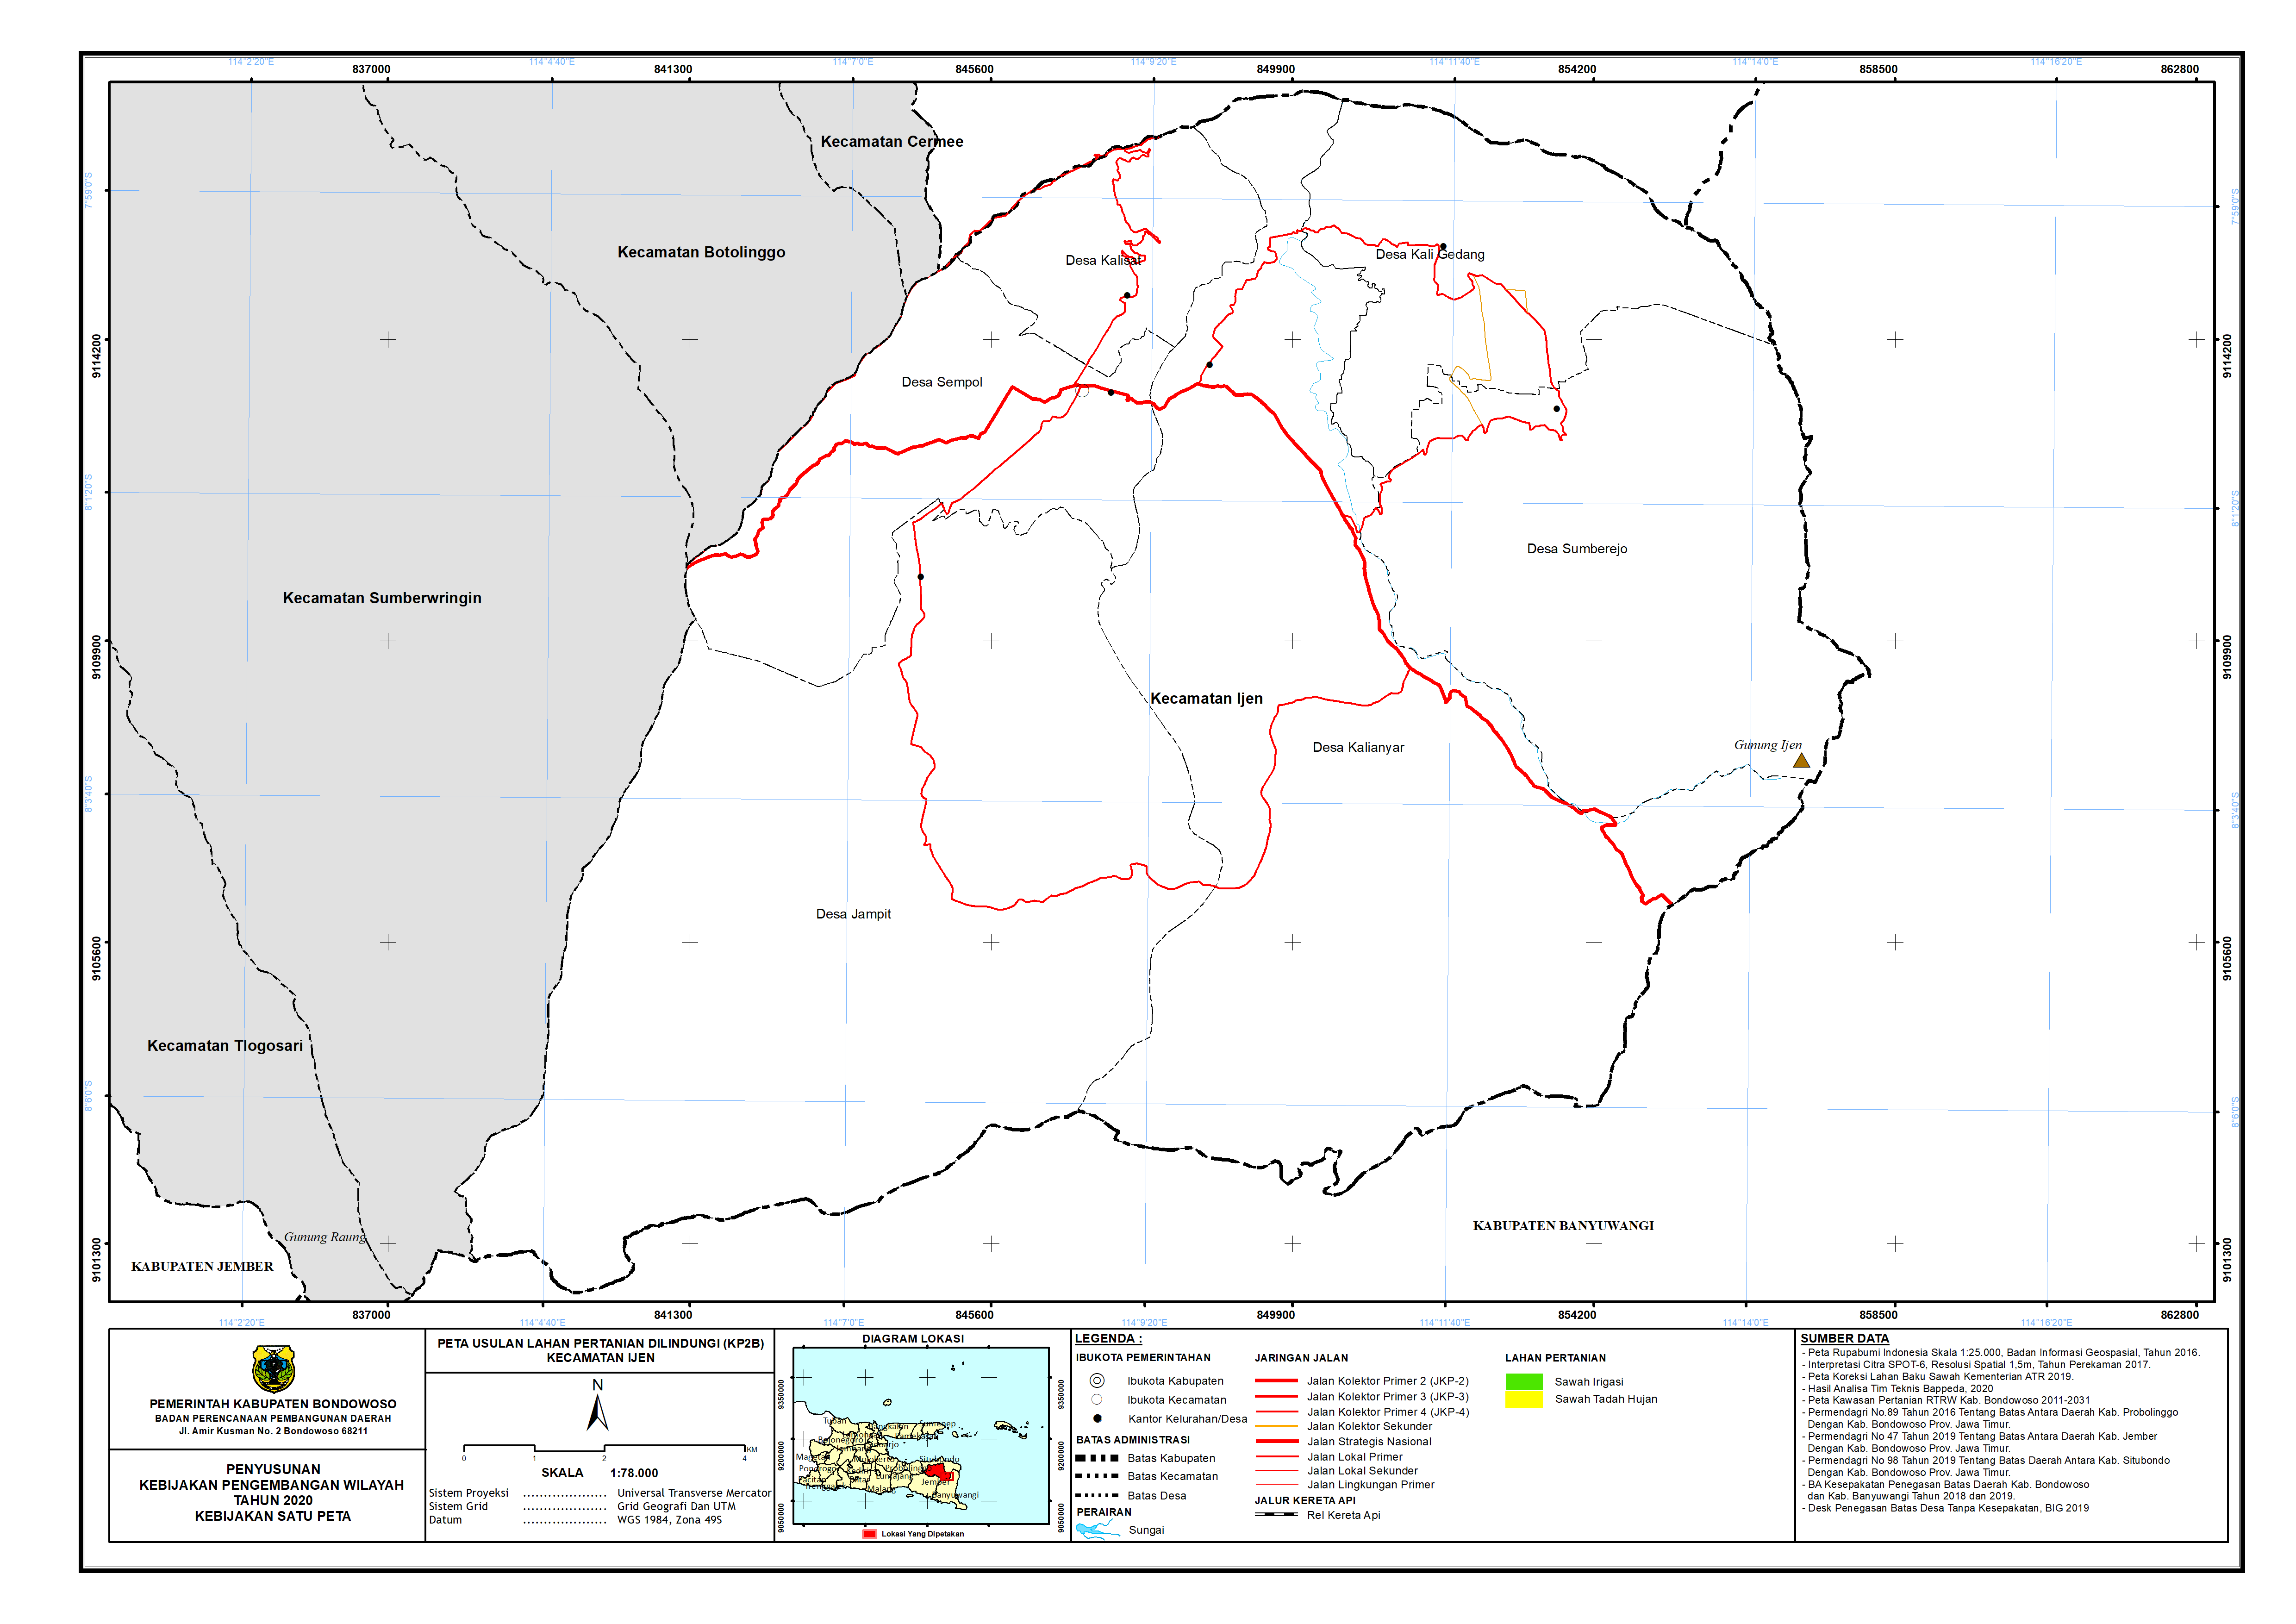 Peta Usulan Lahan Pertanian  Dilindungi Kecamatan Ijen.png